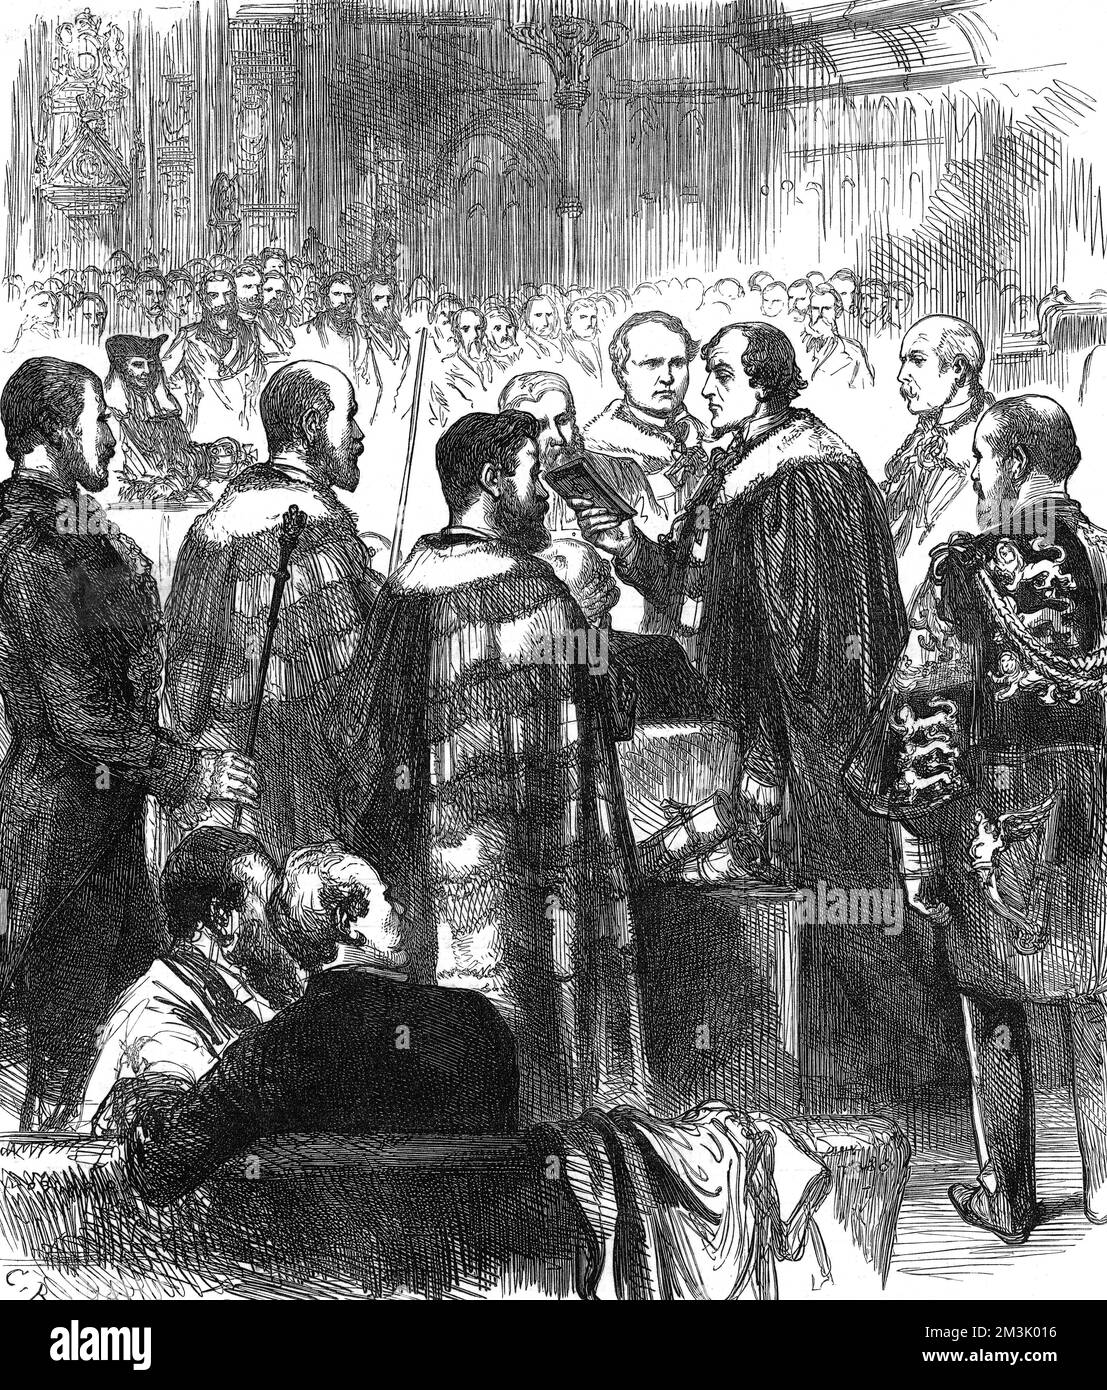 Benjamin Disraeli, 1.. Graf von Beaconsfield, der den Eid im House of Lords ablegte, vor seiner ersten Sitzung als Gleichgesinnter. Disraeli (1804-1881), englischer Staatsmann und Schriftsteller, ist rechts neben dem Bild zu sehen, das eine bibel enthält. 1877 Stockfoto